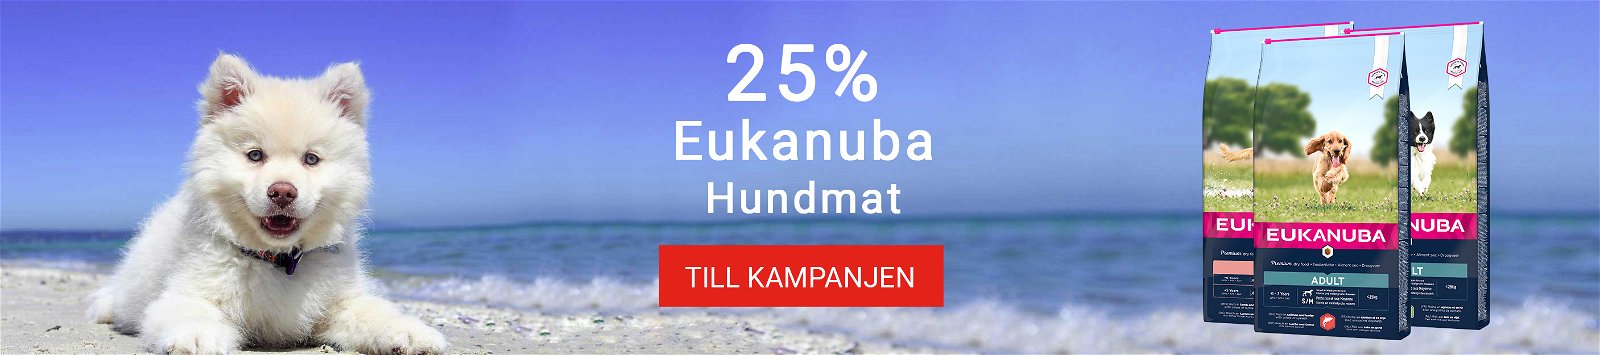 Kampanj Eukanuba